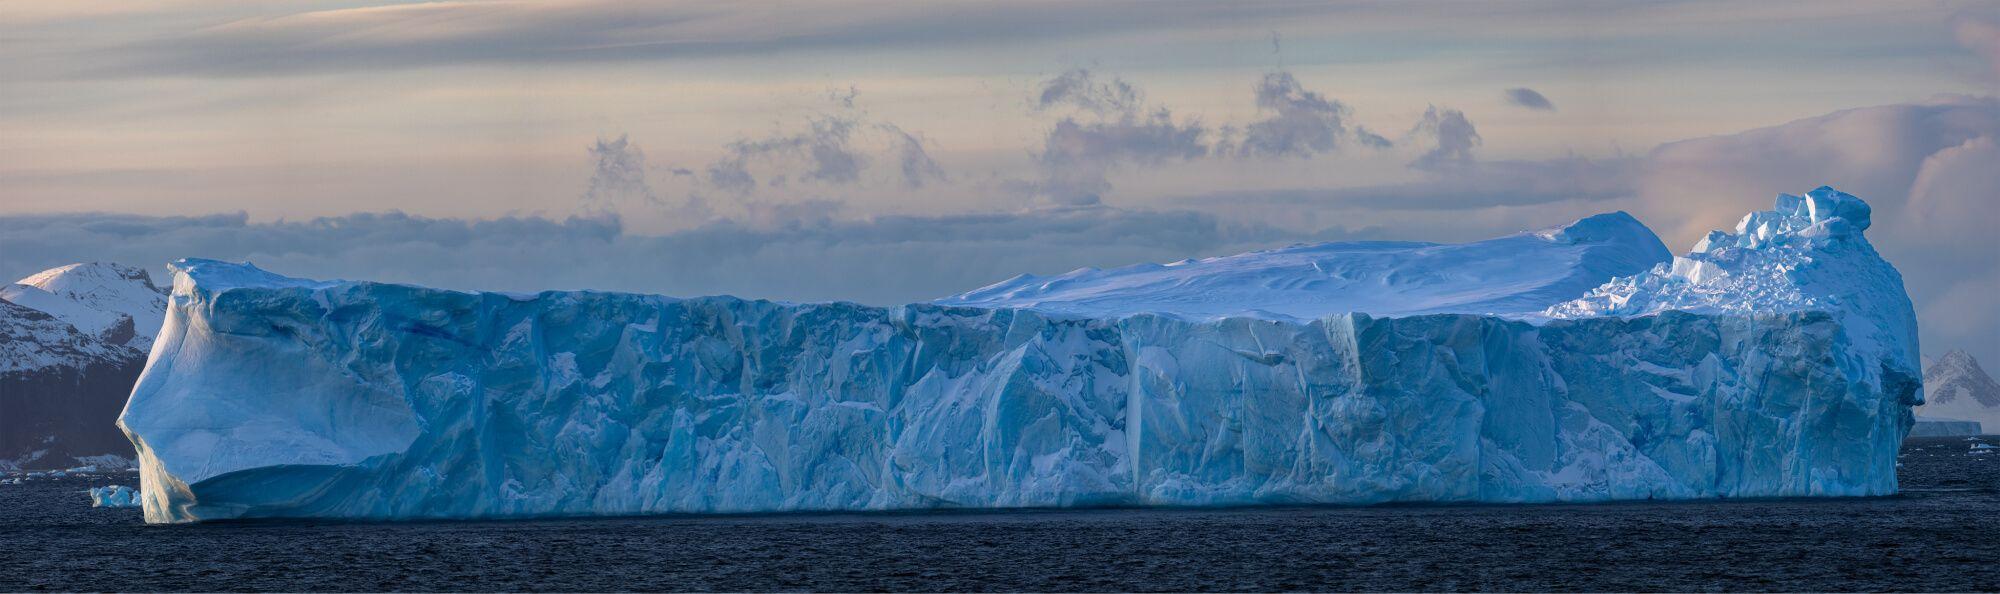 القارة القطبية الجنوبية الجليدية.  المصور: أرتيم شيستاكوف. المكان: القطب الجنوبي.